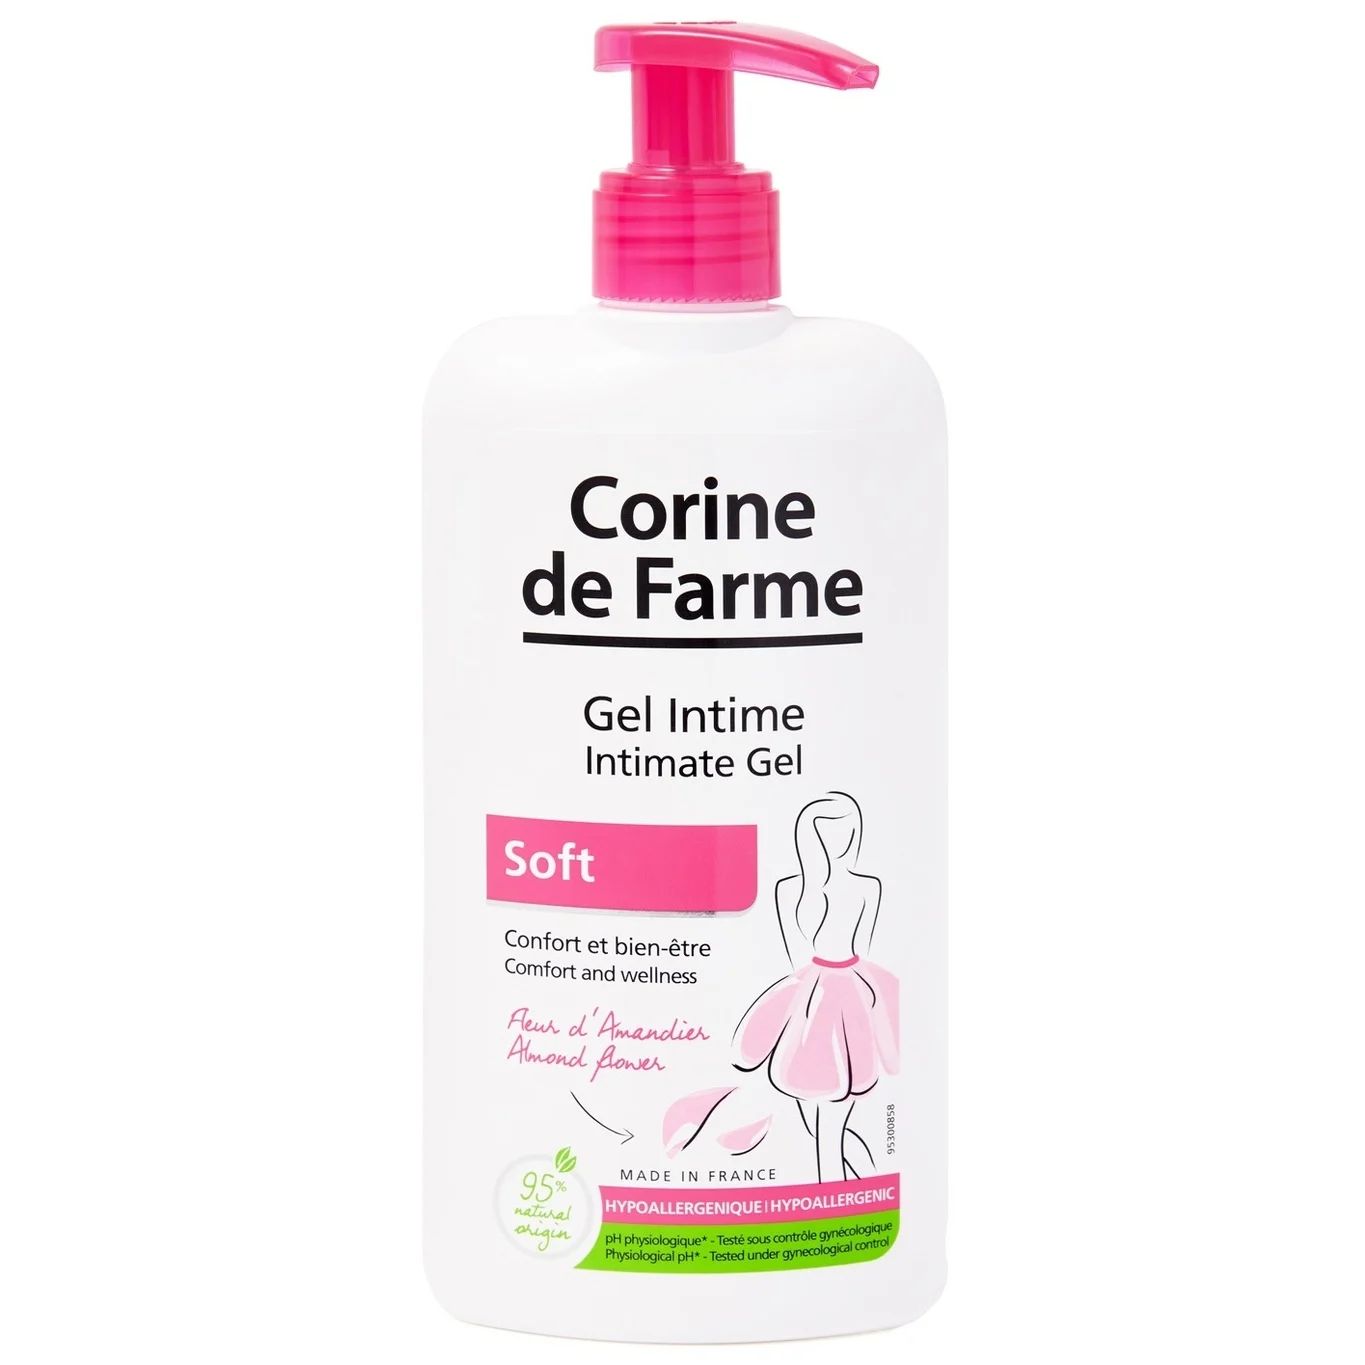 Гель для душа для интимной гигиены Corine de Farme Intimate Gel Soft ультрамягкий 250 мл освежающий гель для интимной гигиены для ежедневного ухода refreshing intimate gel